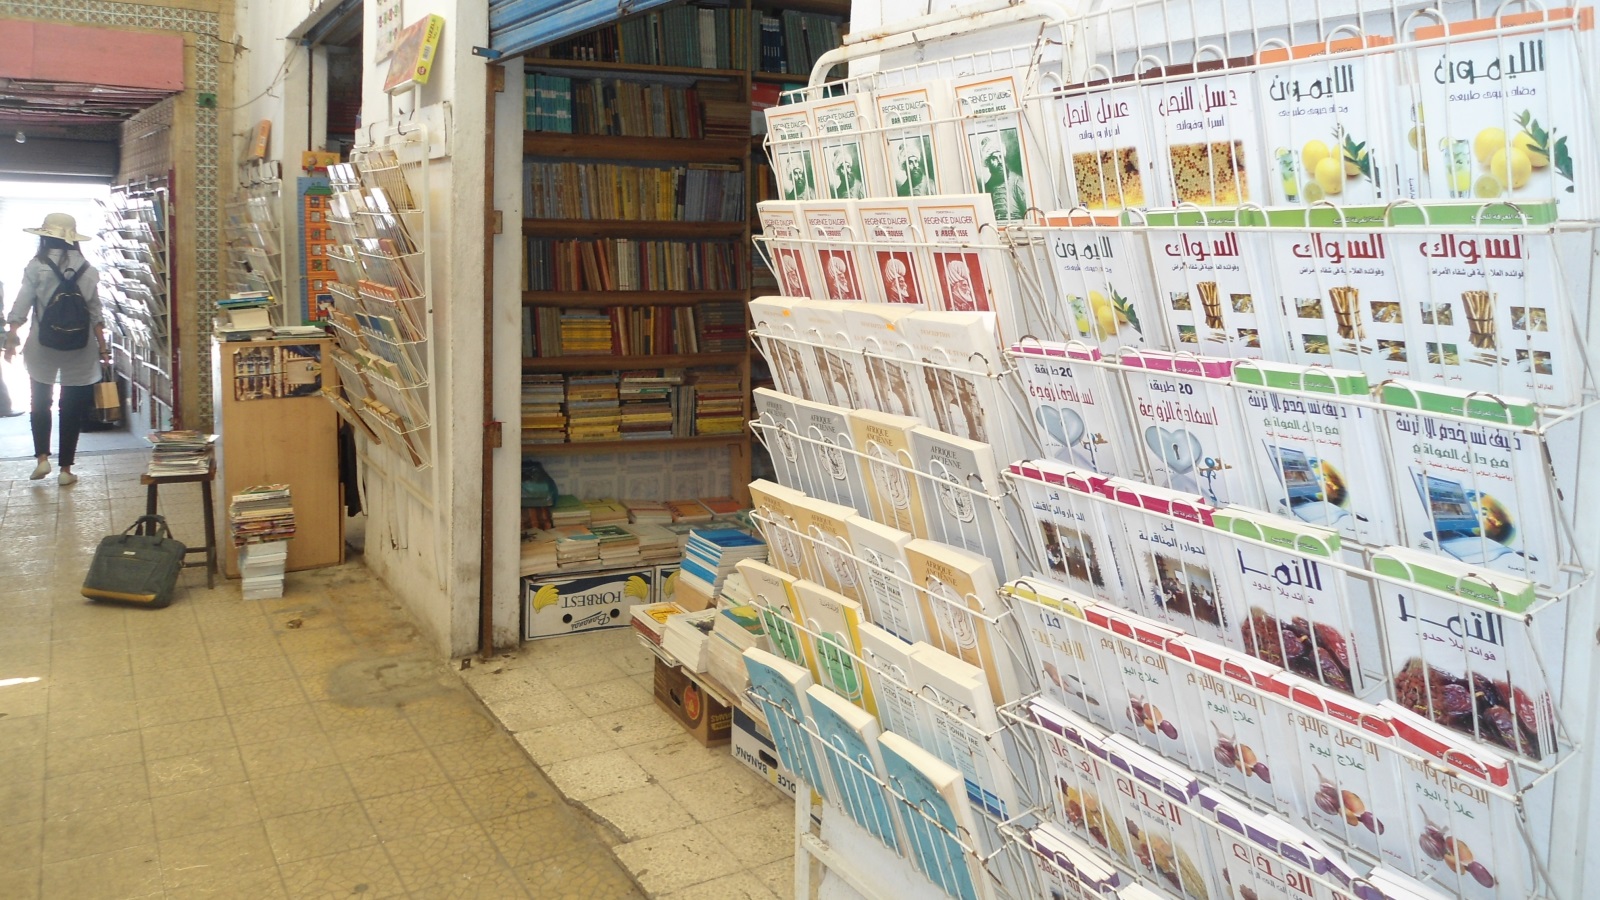 ‪بعض معروضات مكتبة تونسية في نهج الدباغين‬ بعض معروضات مكتبة تونسية في نهج الدباغين (وكالة الأنباء الألمانية)